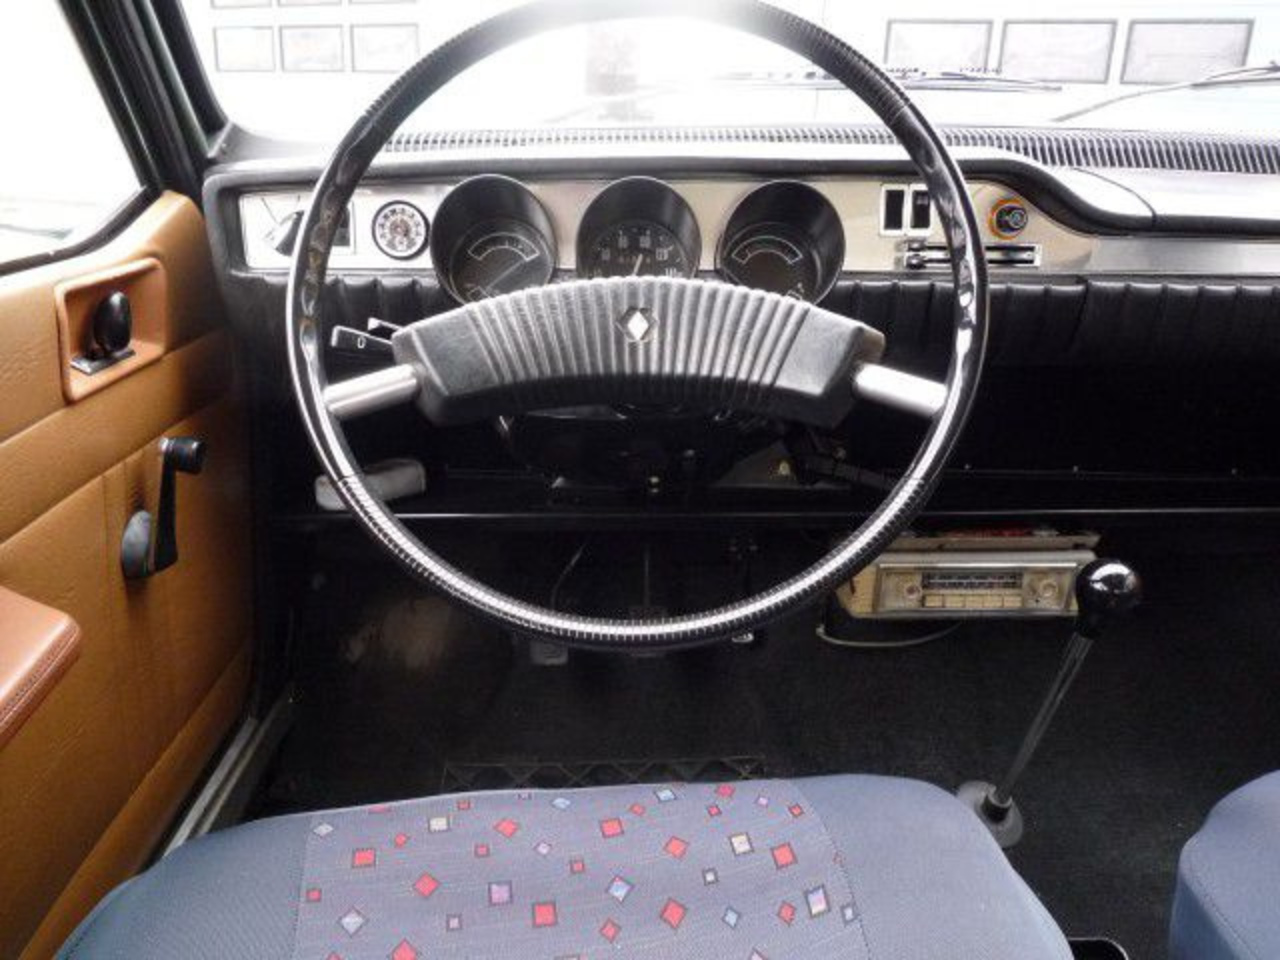 1972 Renault 12 - TL inside | Flickr - Photo Sharing!